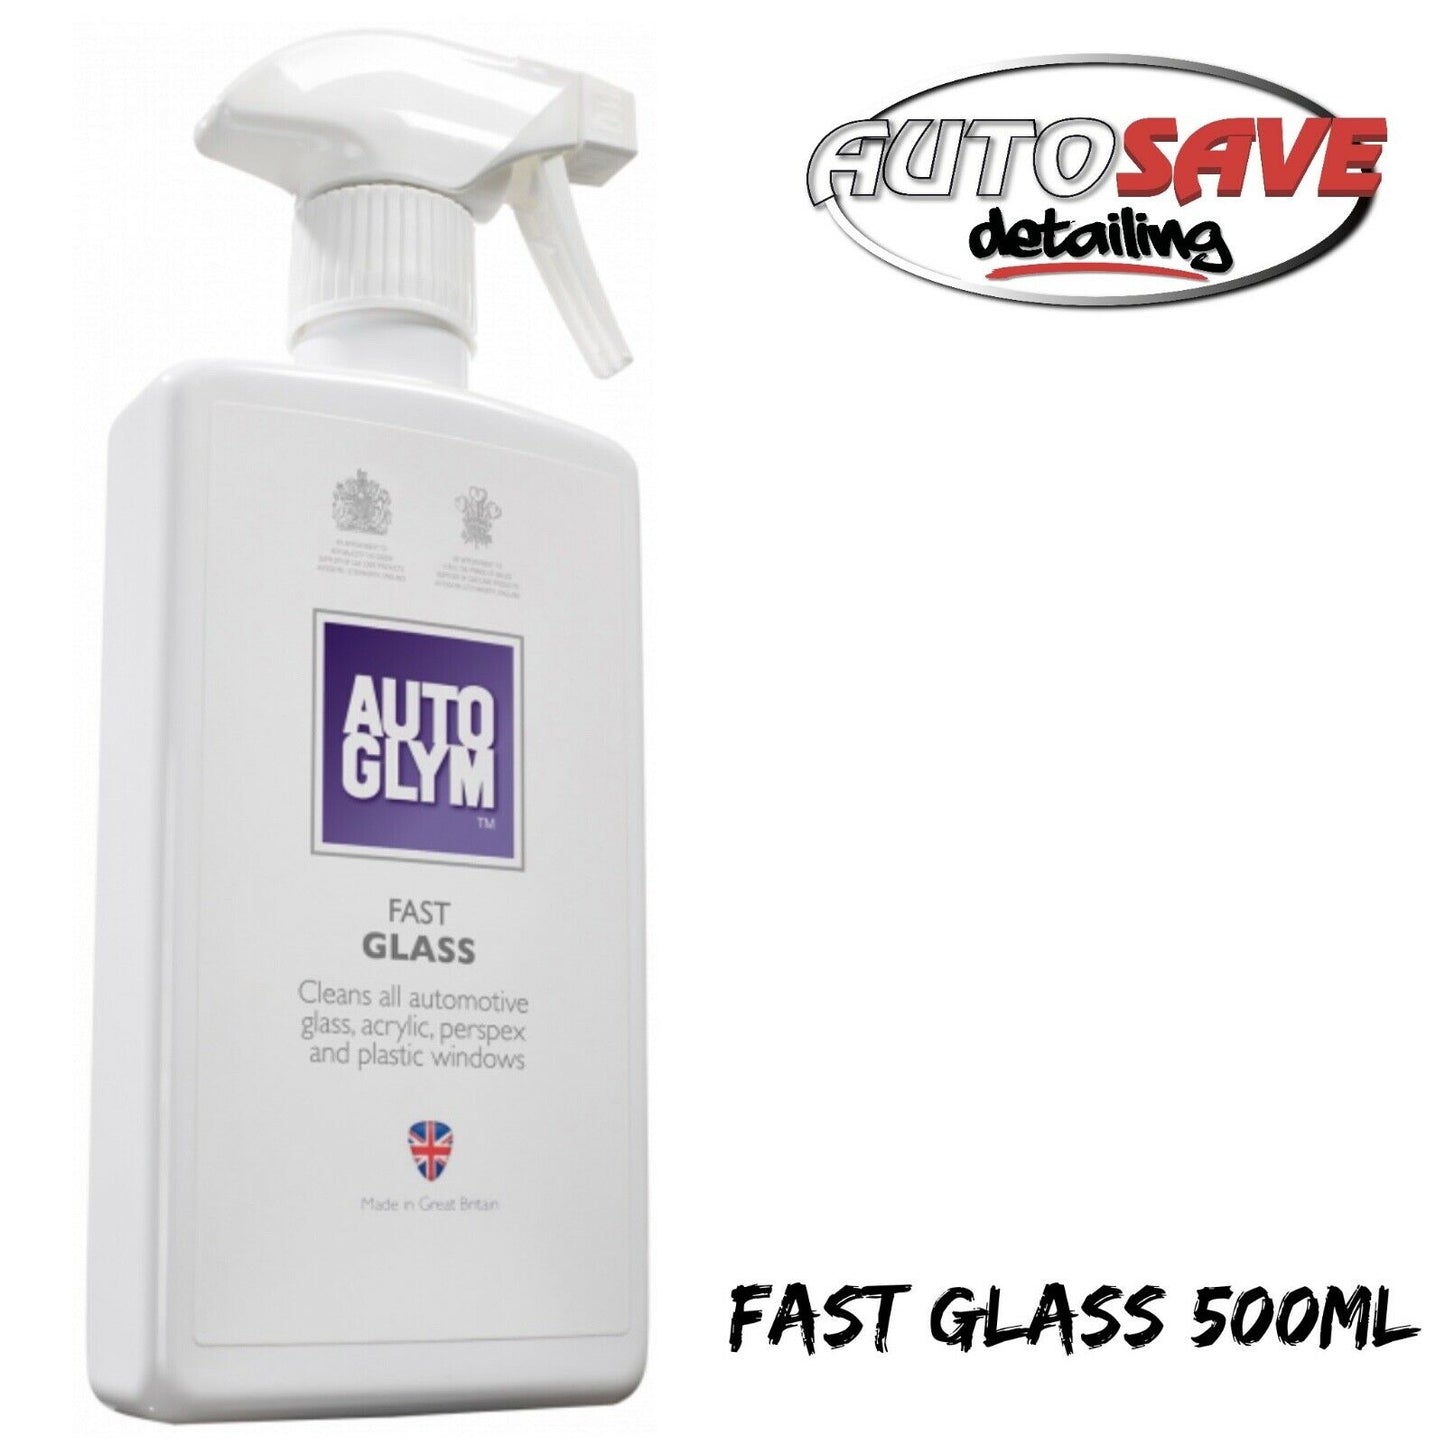 AutoGlym Fast Glass 500ML